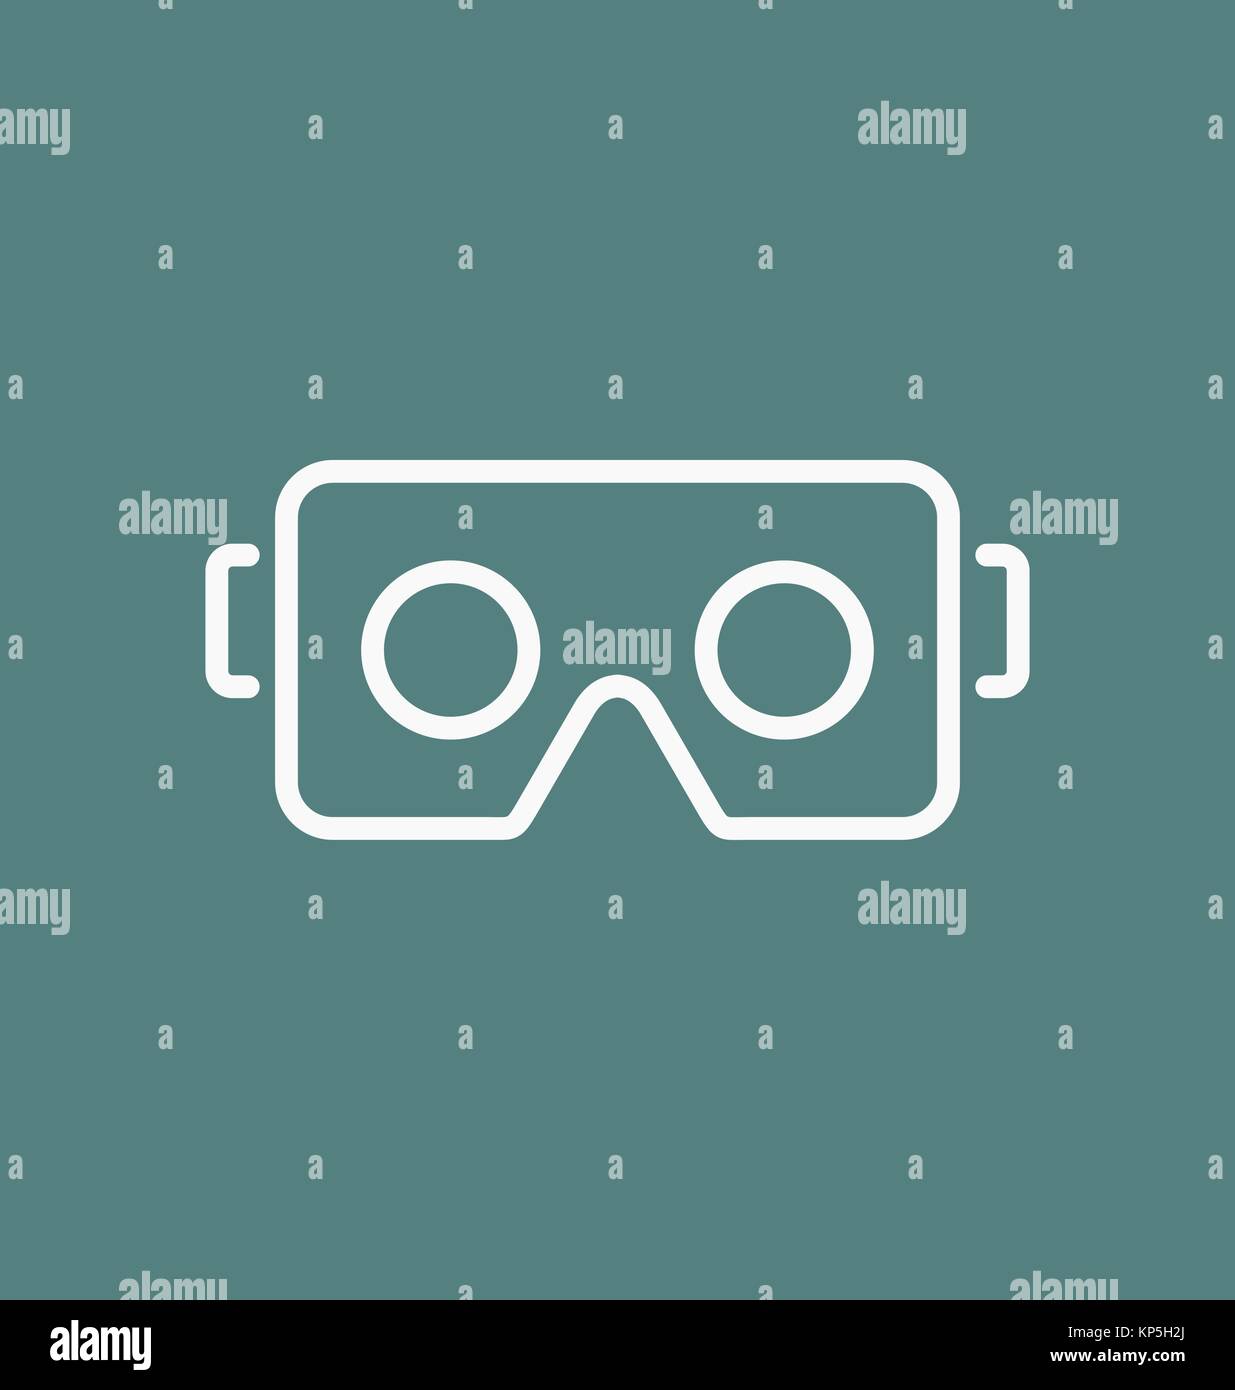 Casque lunettes / VR pour smartphone vector illustration. Illustration de Vecteur